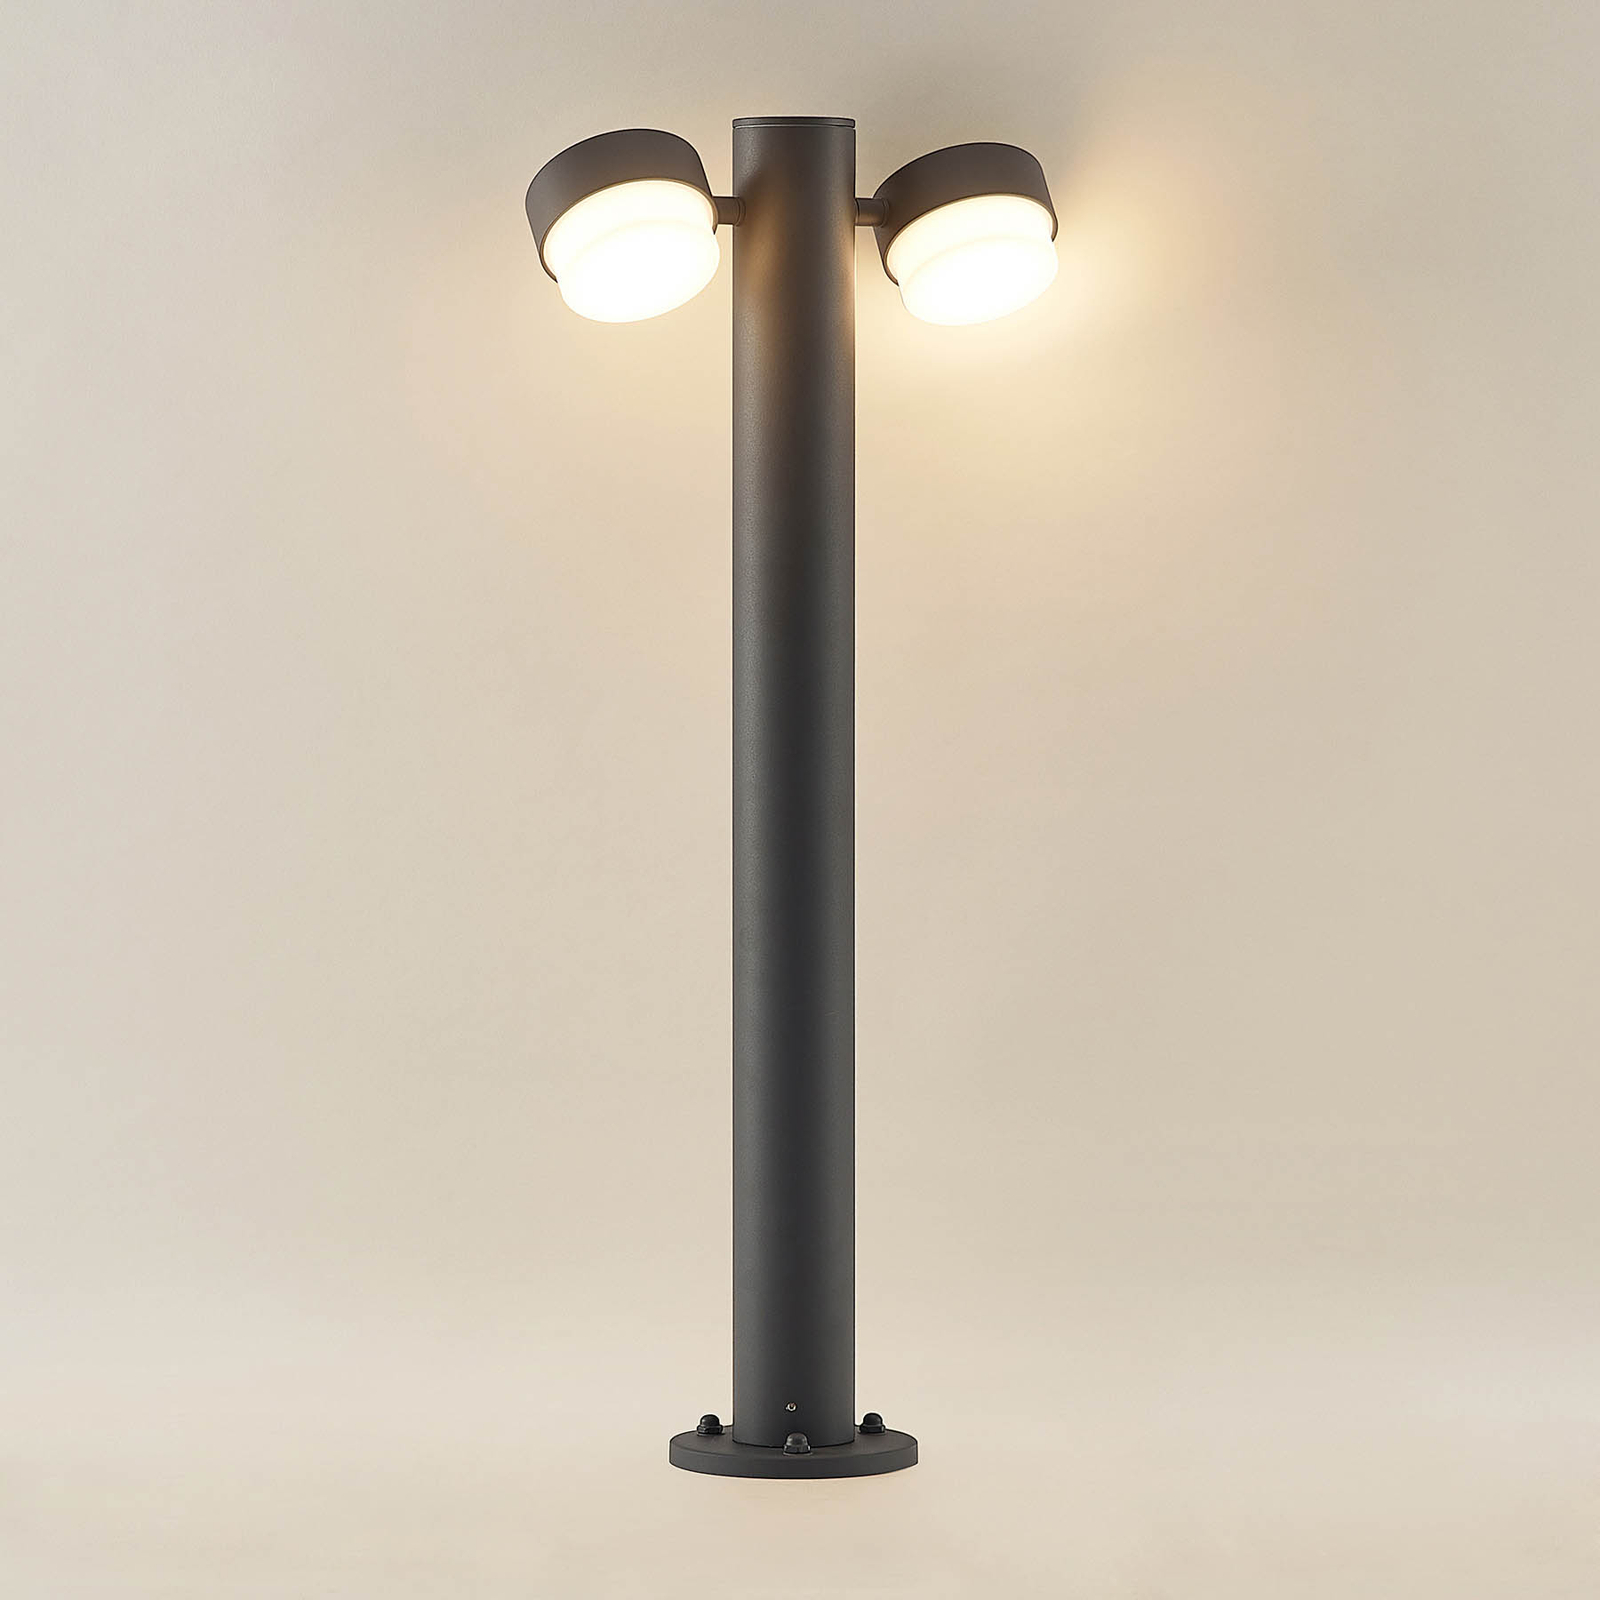 Lucande Marvella árbóc lámpa, 2 izzós, 75 cm-es